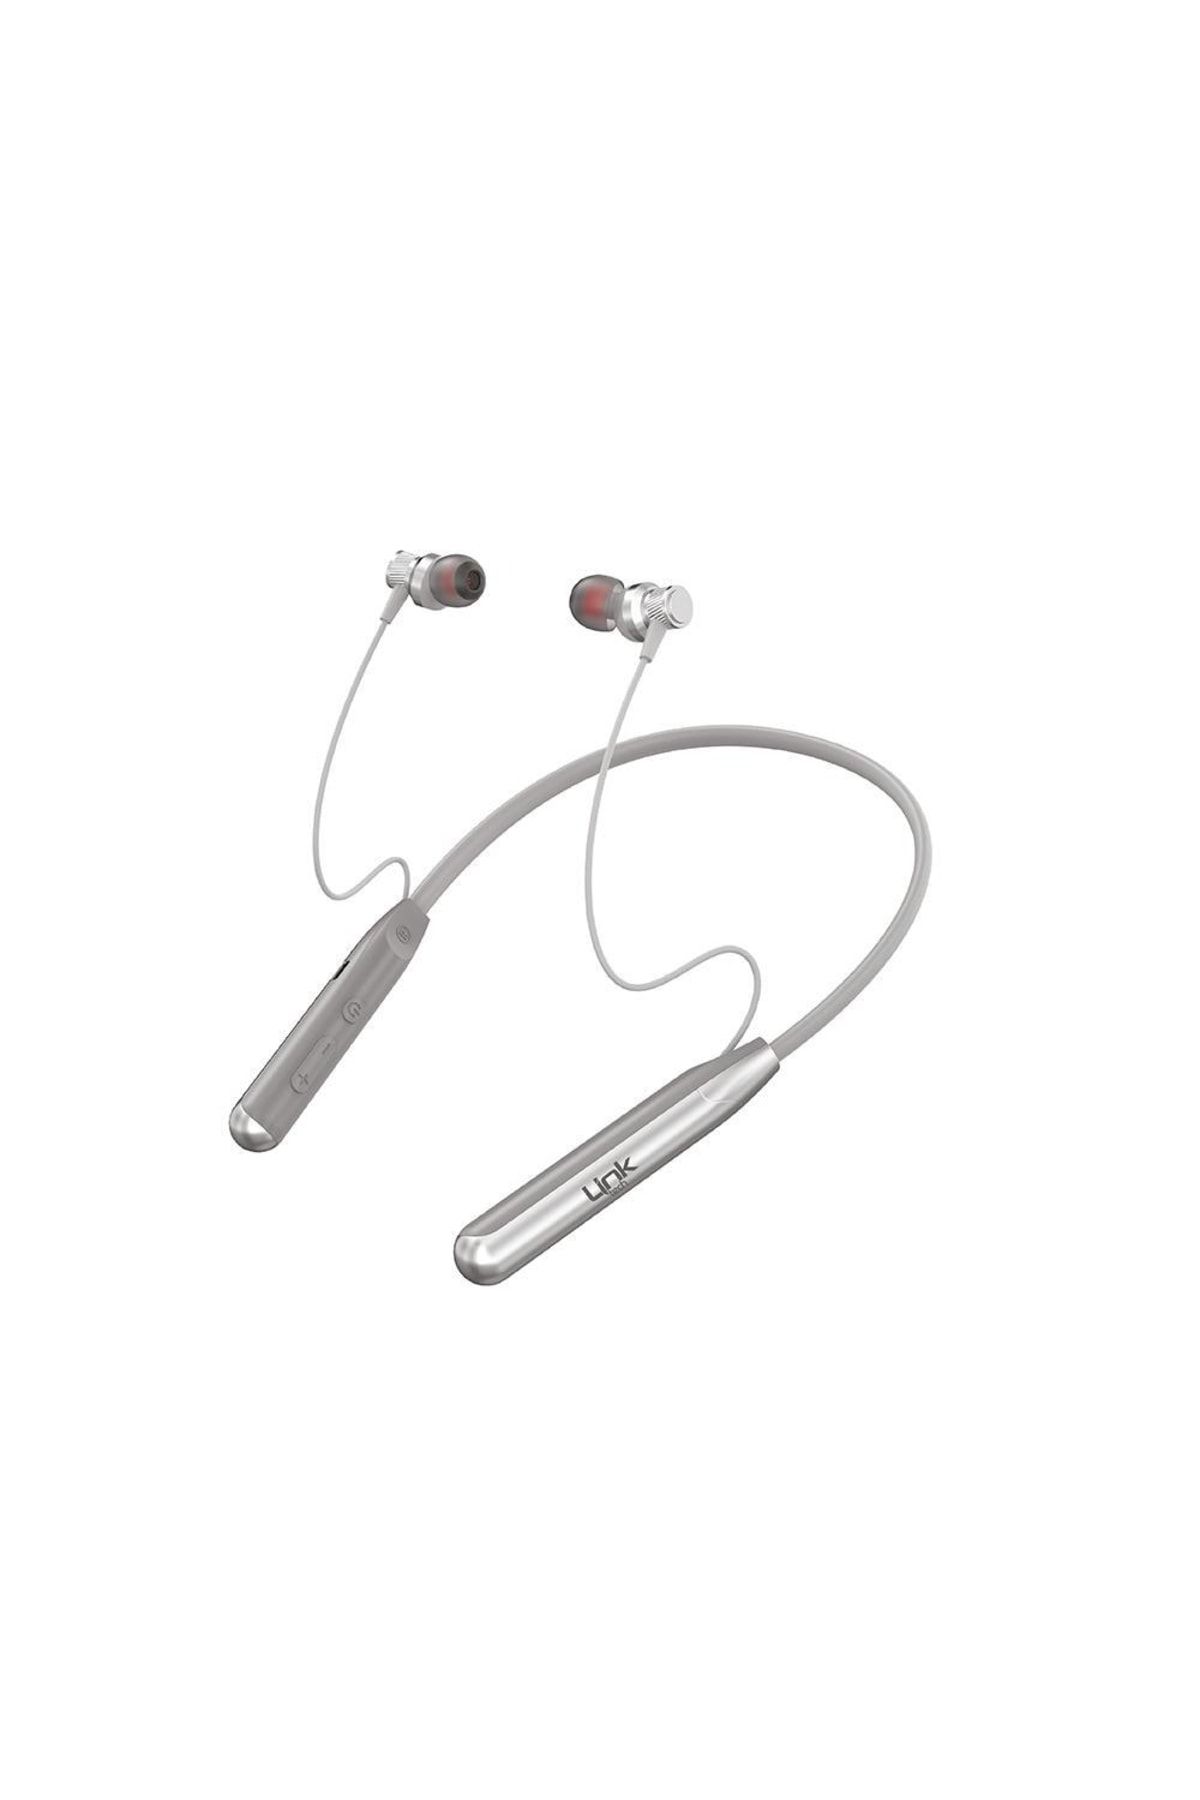 Linktech Boyun Askılı Kulak Içi Bluetooth Kulaklık H993 Siyah